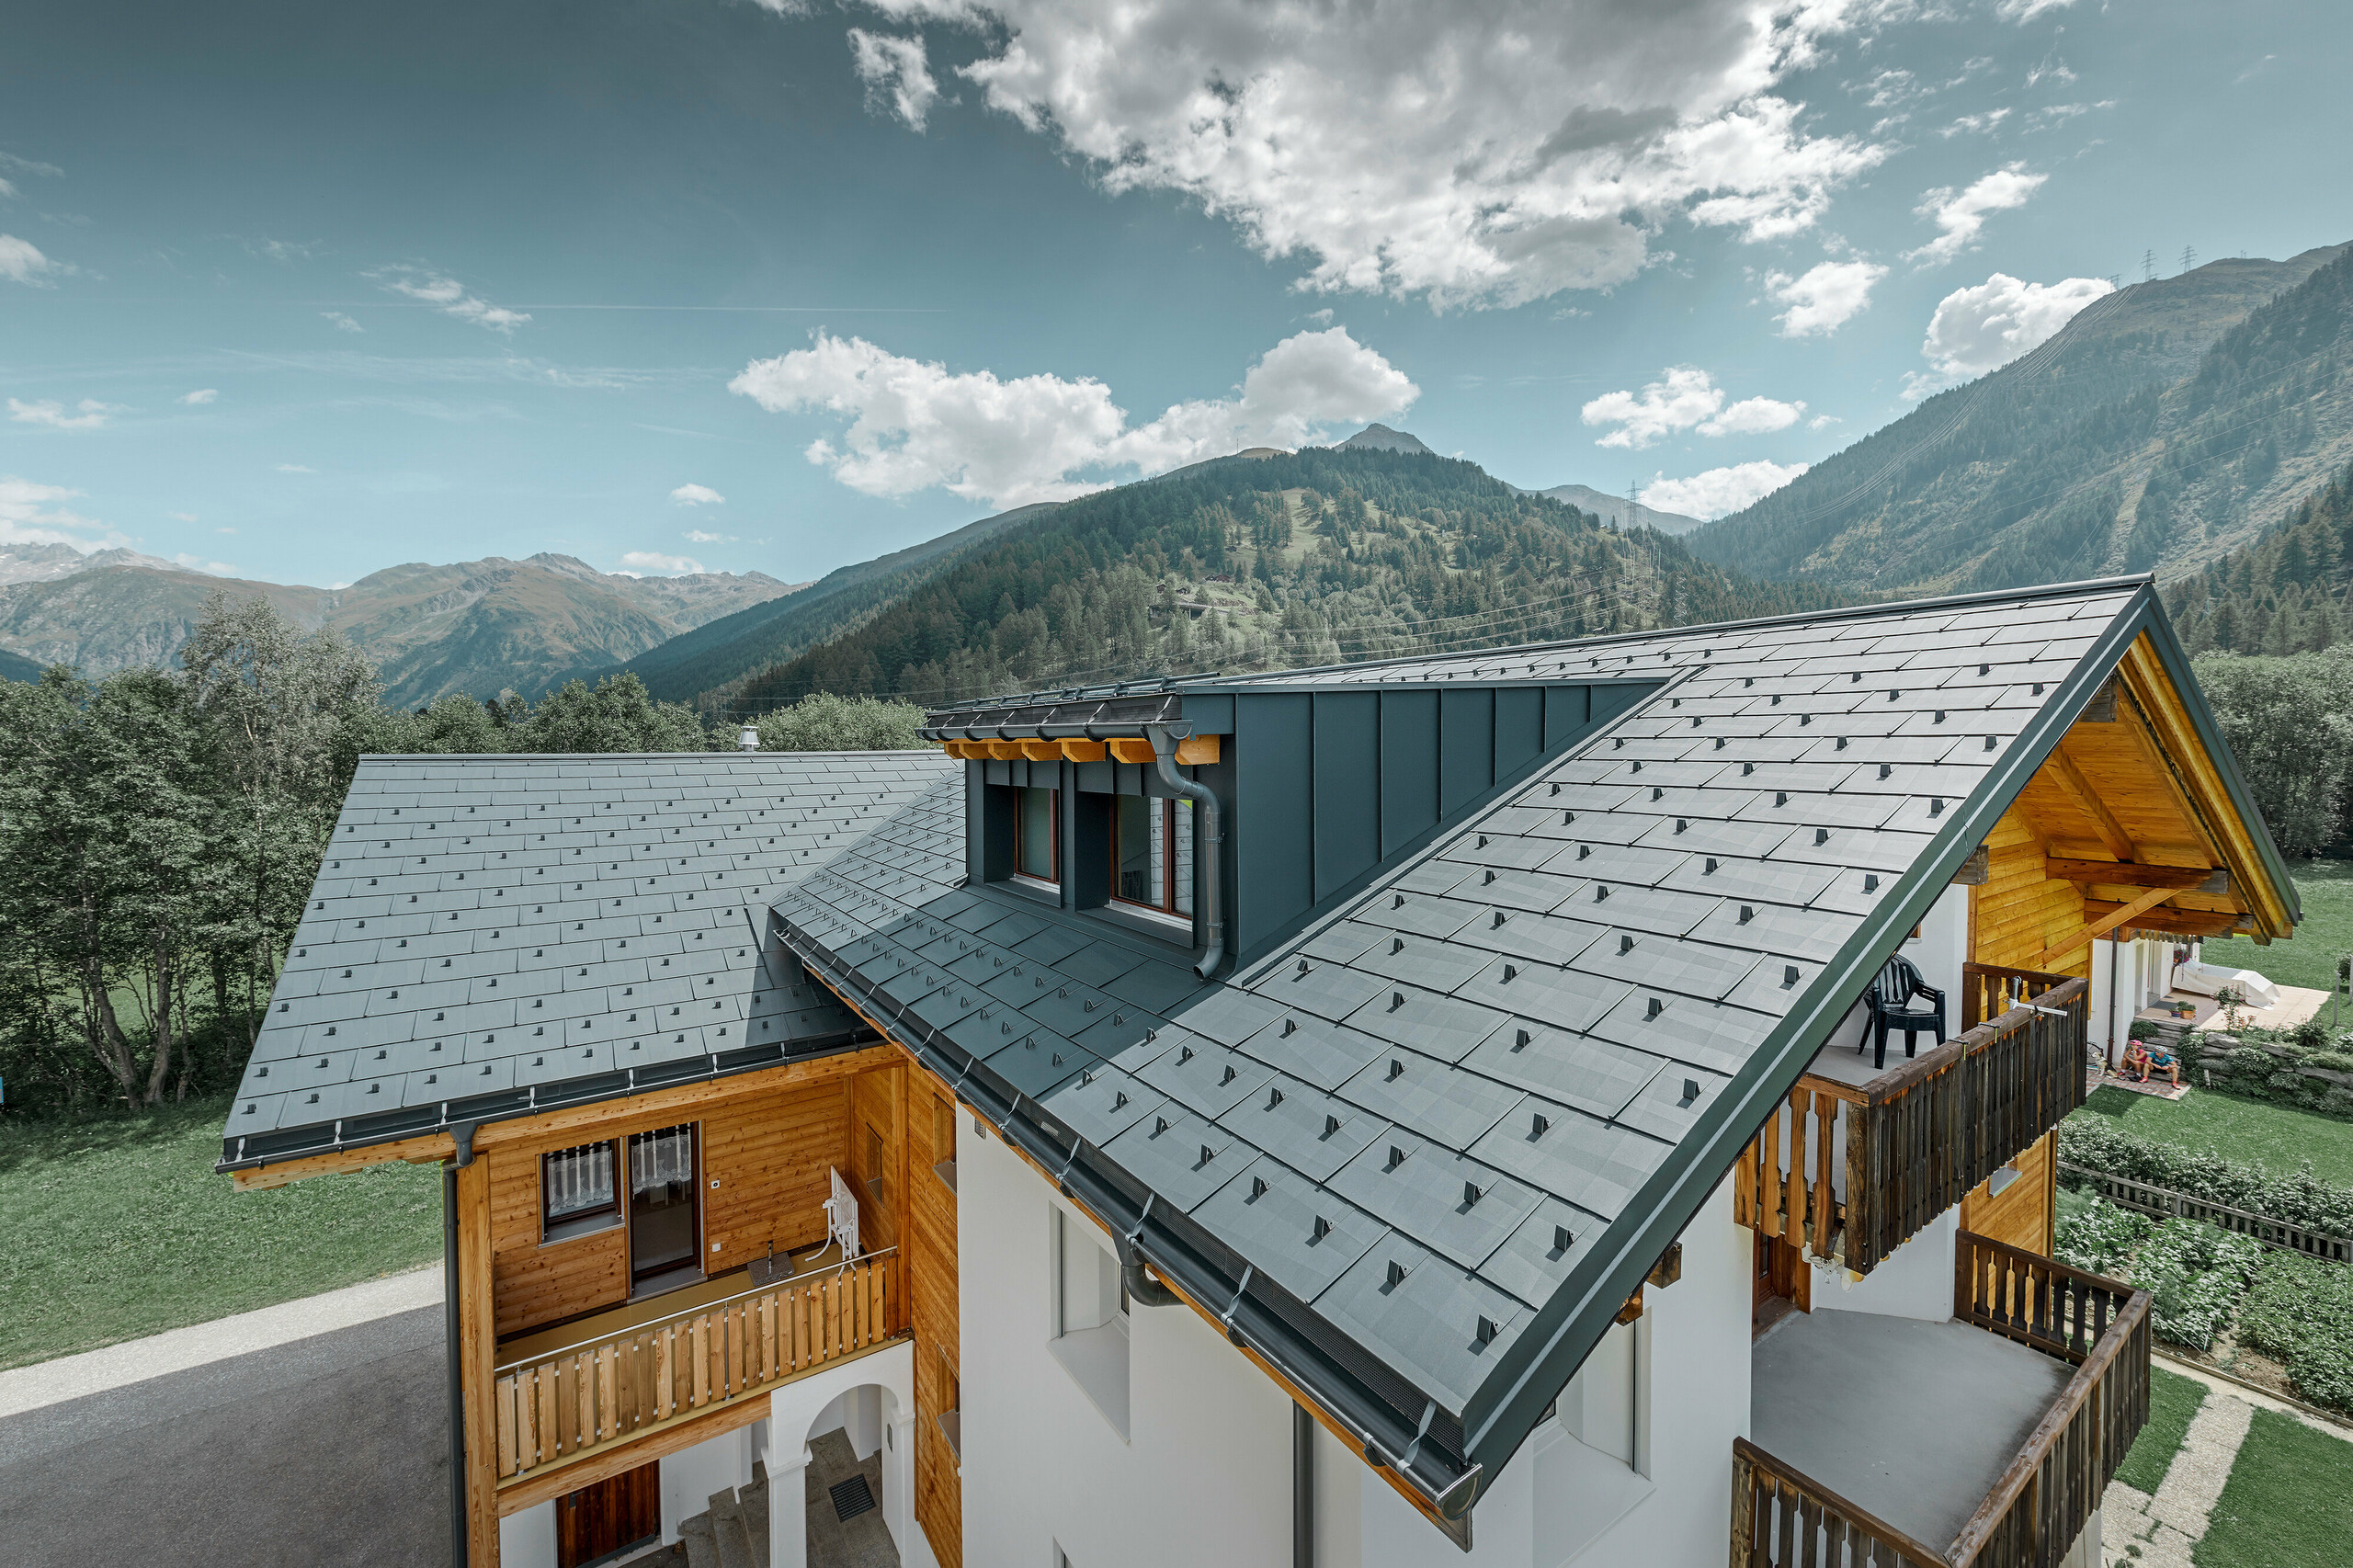 Nieuw gerenoveerd woonhuis met zadeldak en dakkapel; de dakrenovatie werd uitgevoerd met het PREFA dakpaneel FX.12 in antraciet.